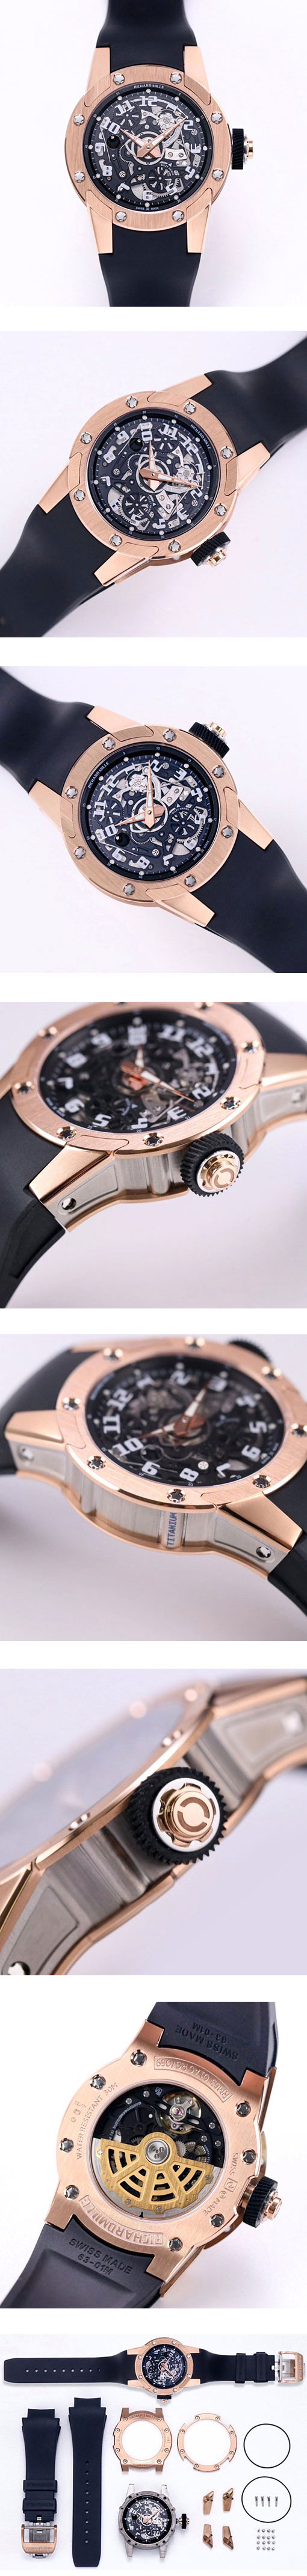 リシャール・ミル最高級コピー時計 RM 63-01 オートマティック ディジーハンズ